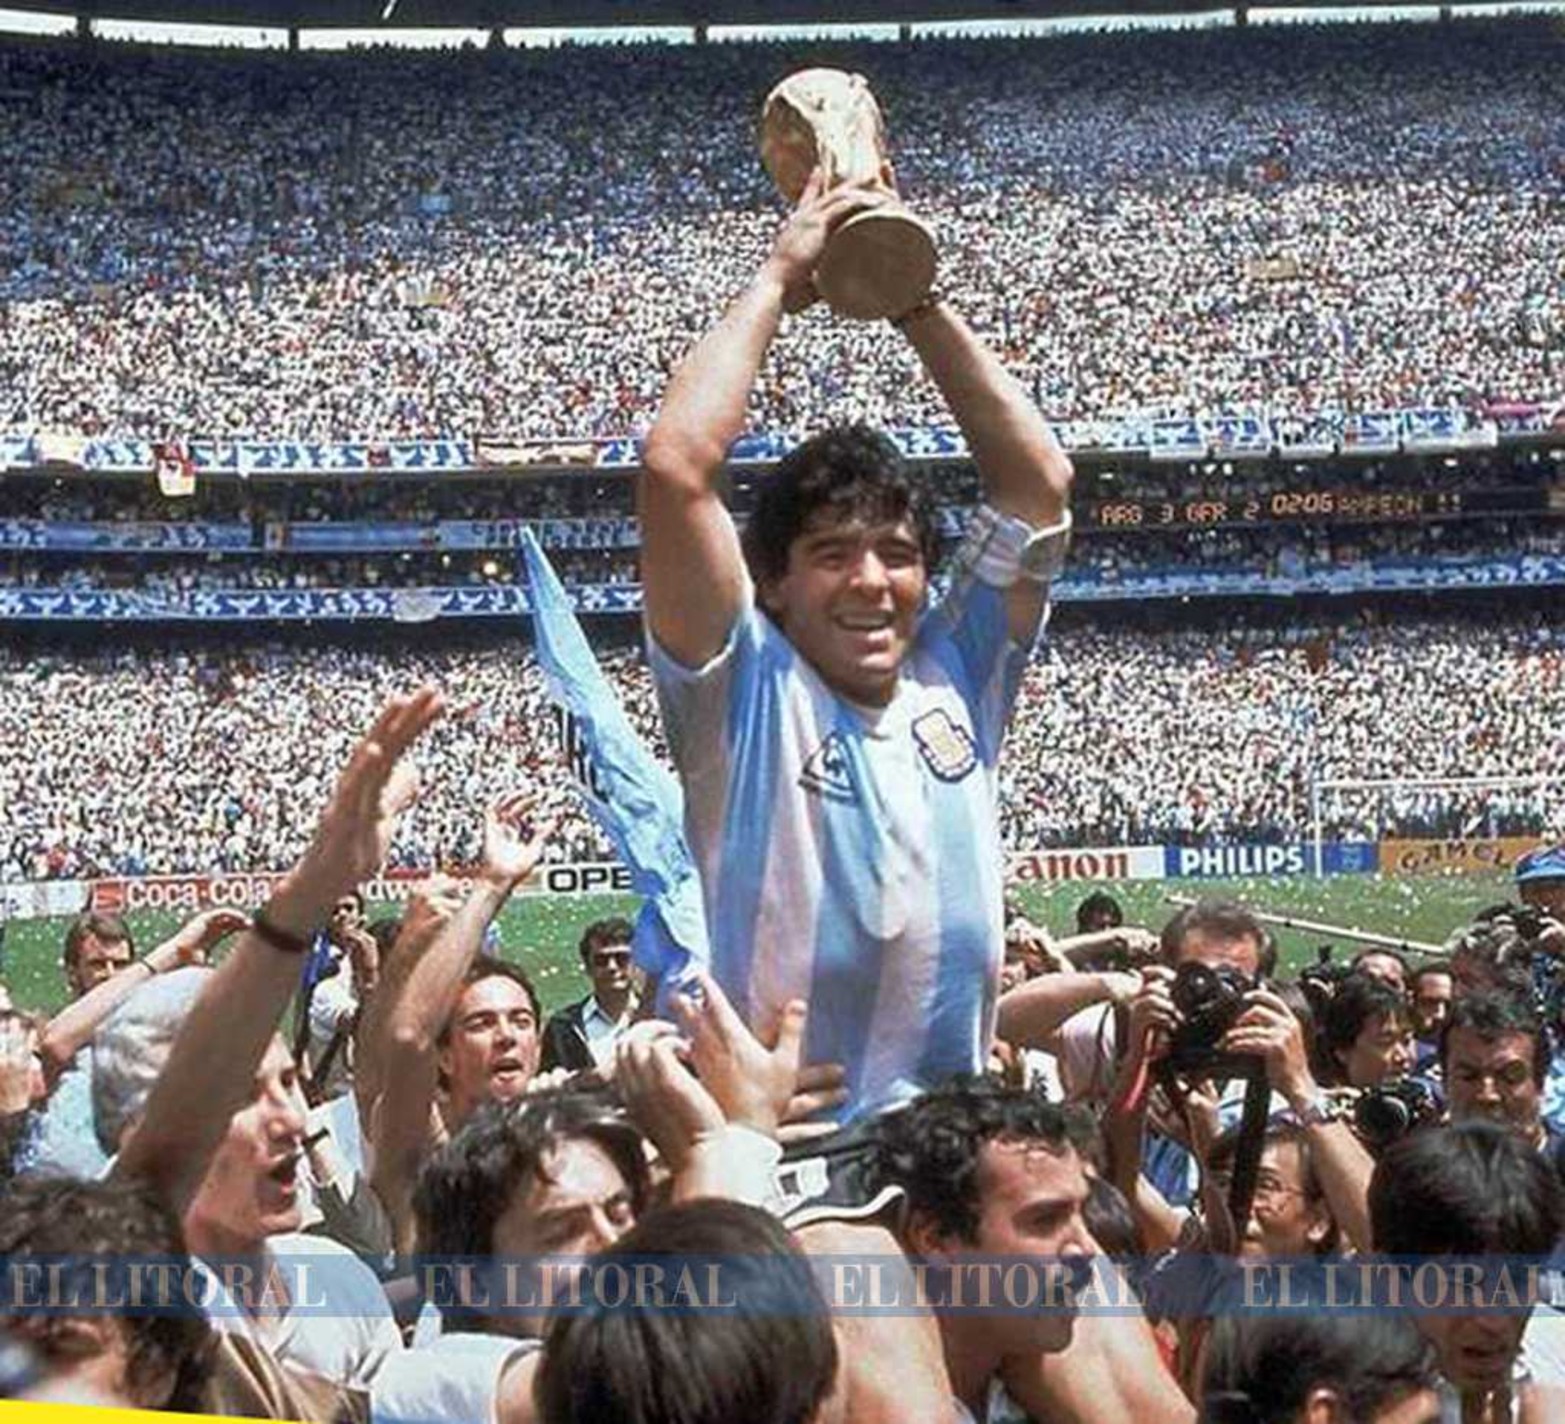 Una foto histórica. Levantando la Copa del mundo en el mundial de 1986 en México. Quien lo tiene a cocochito es el santafesino Roberto Cejas.